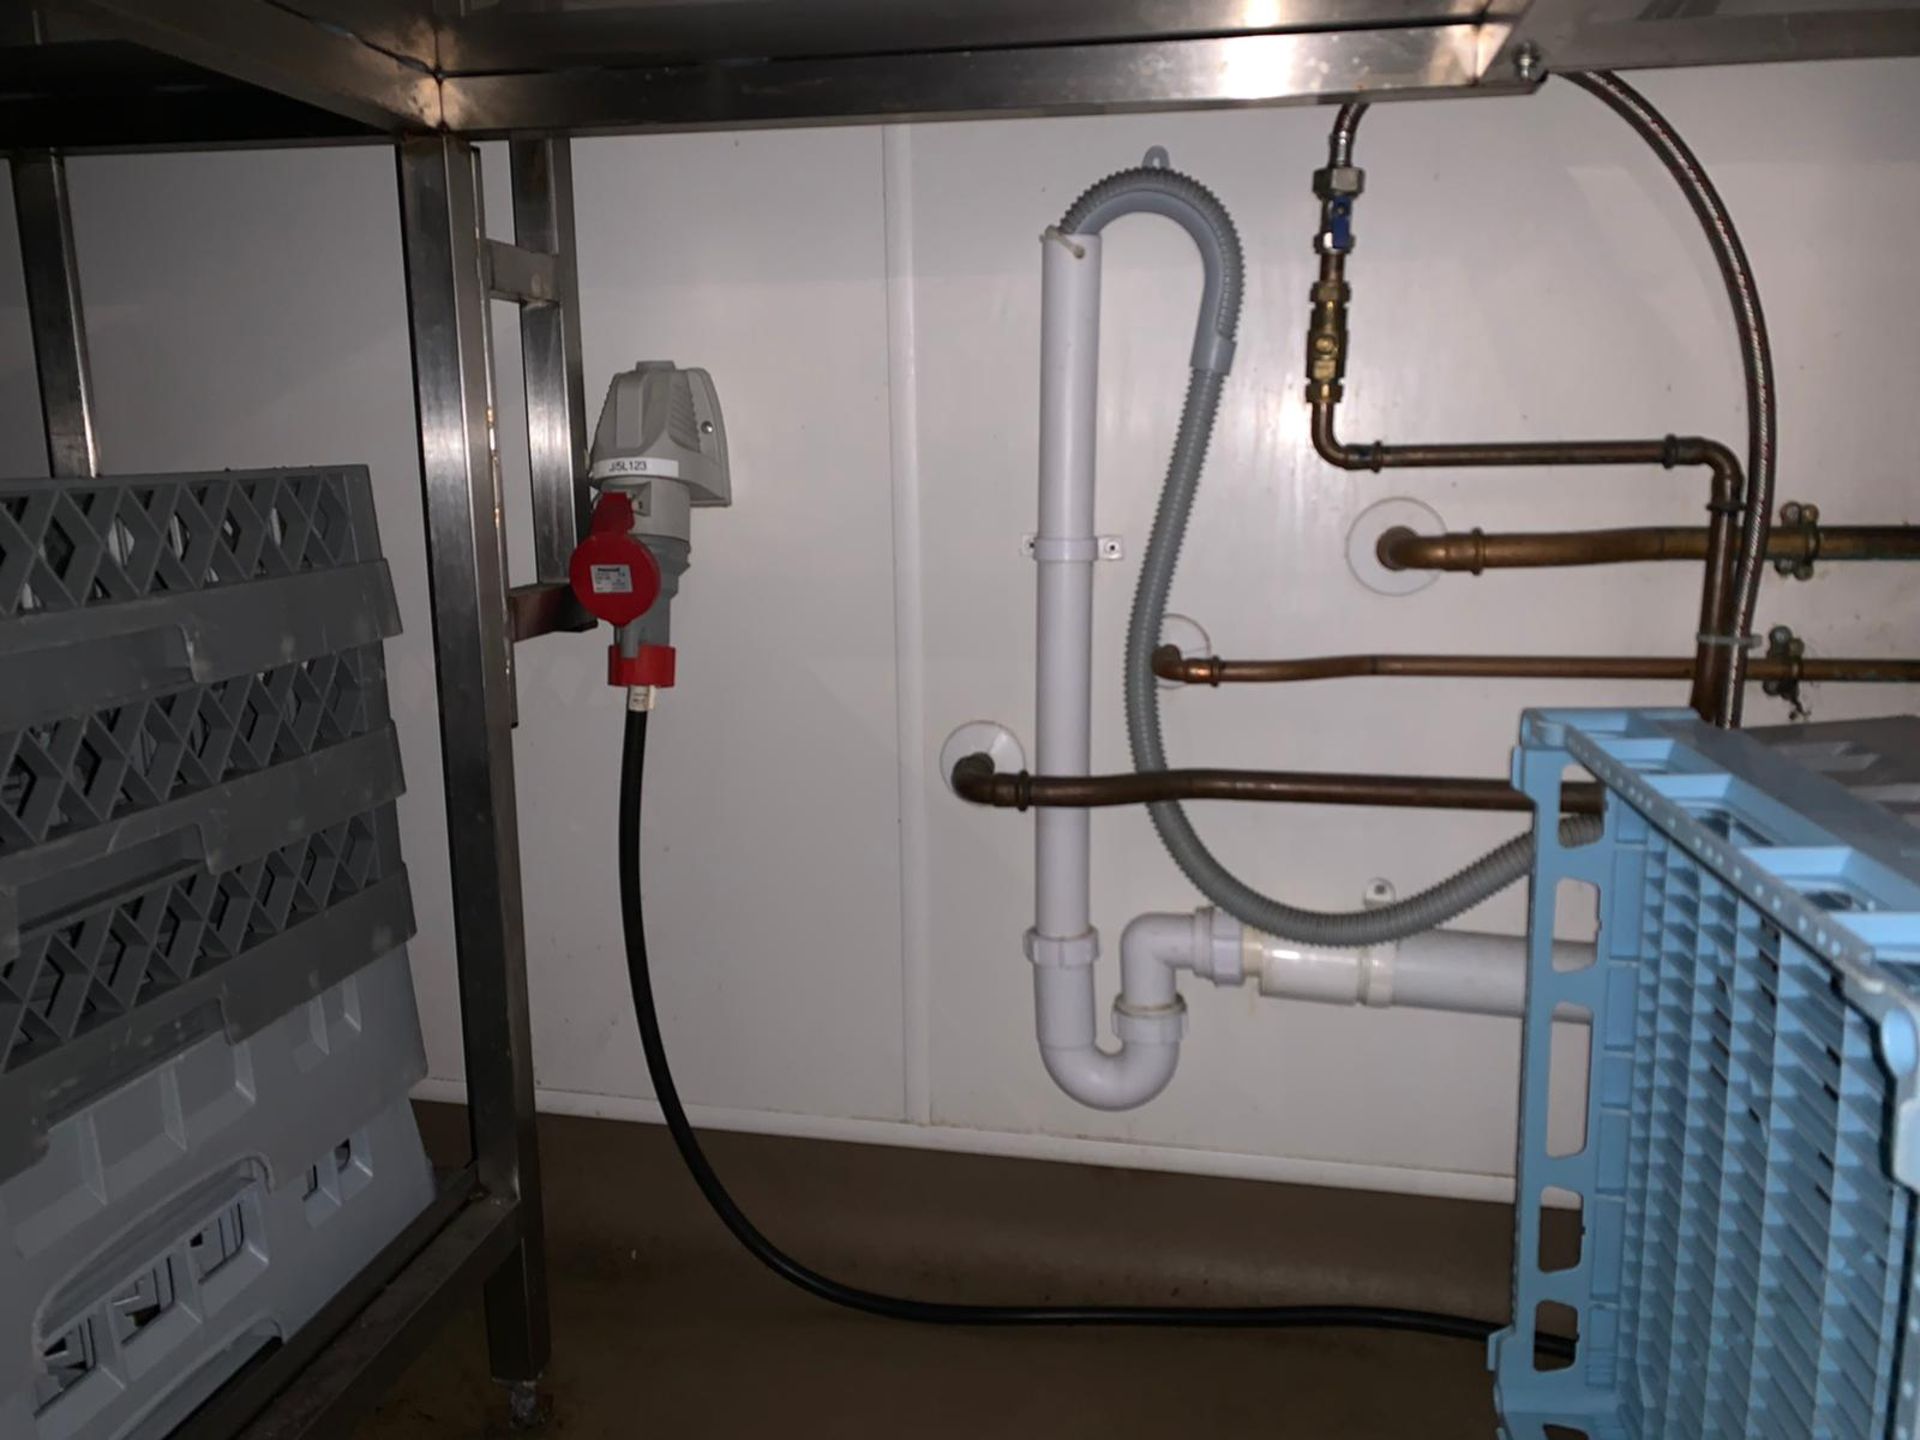 Hobart Commercial Grade Conveyor Dishwasher & Sink Unit - Image 9 of 9